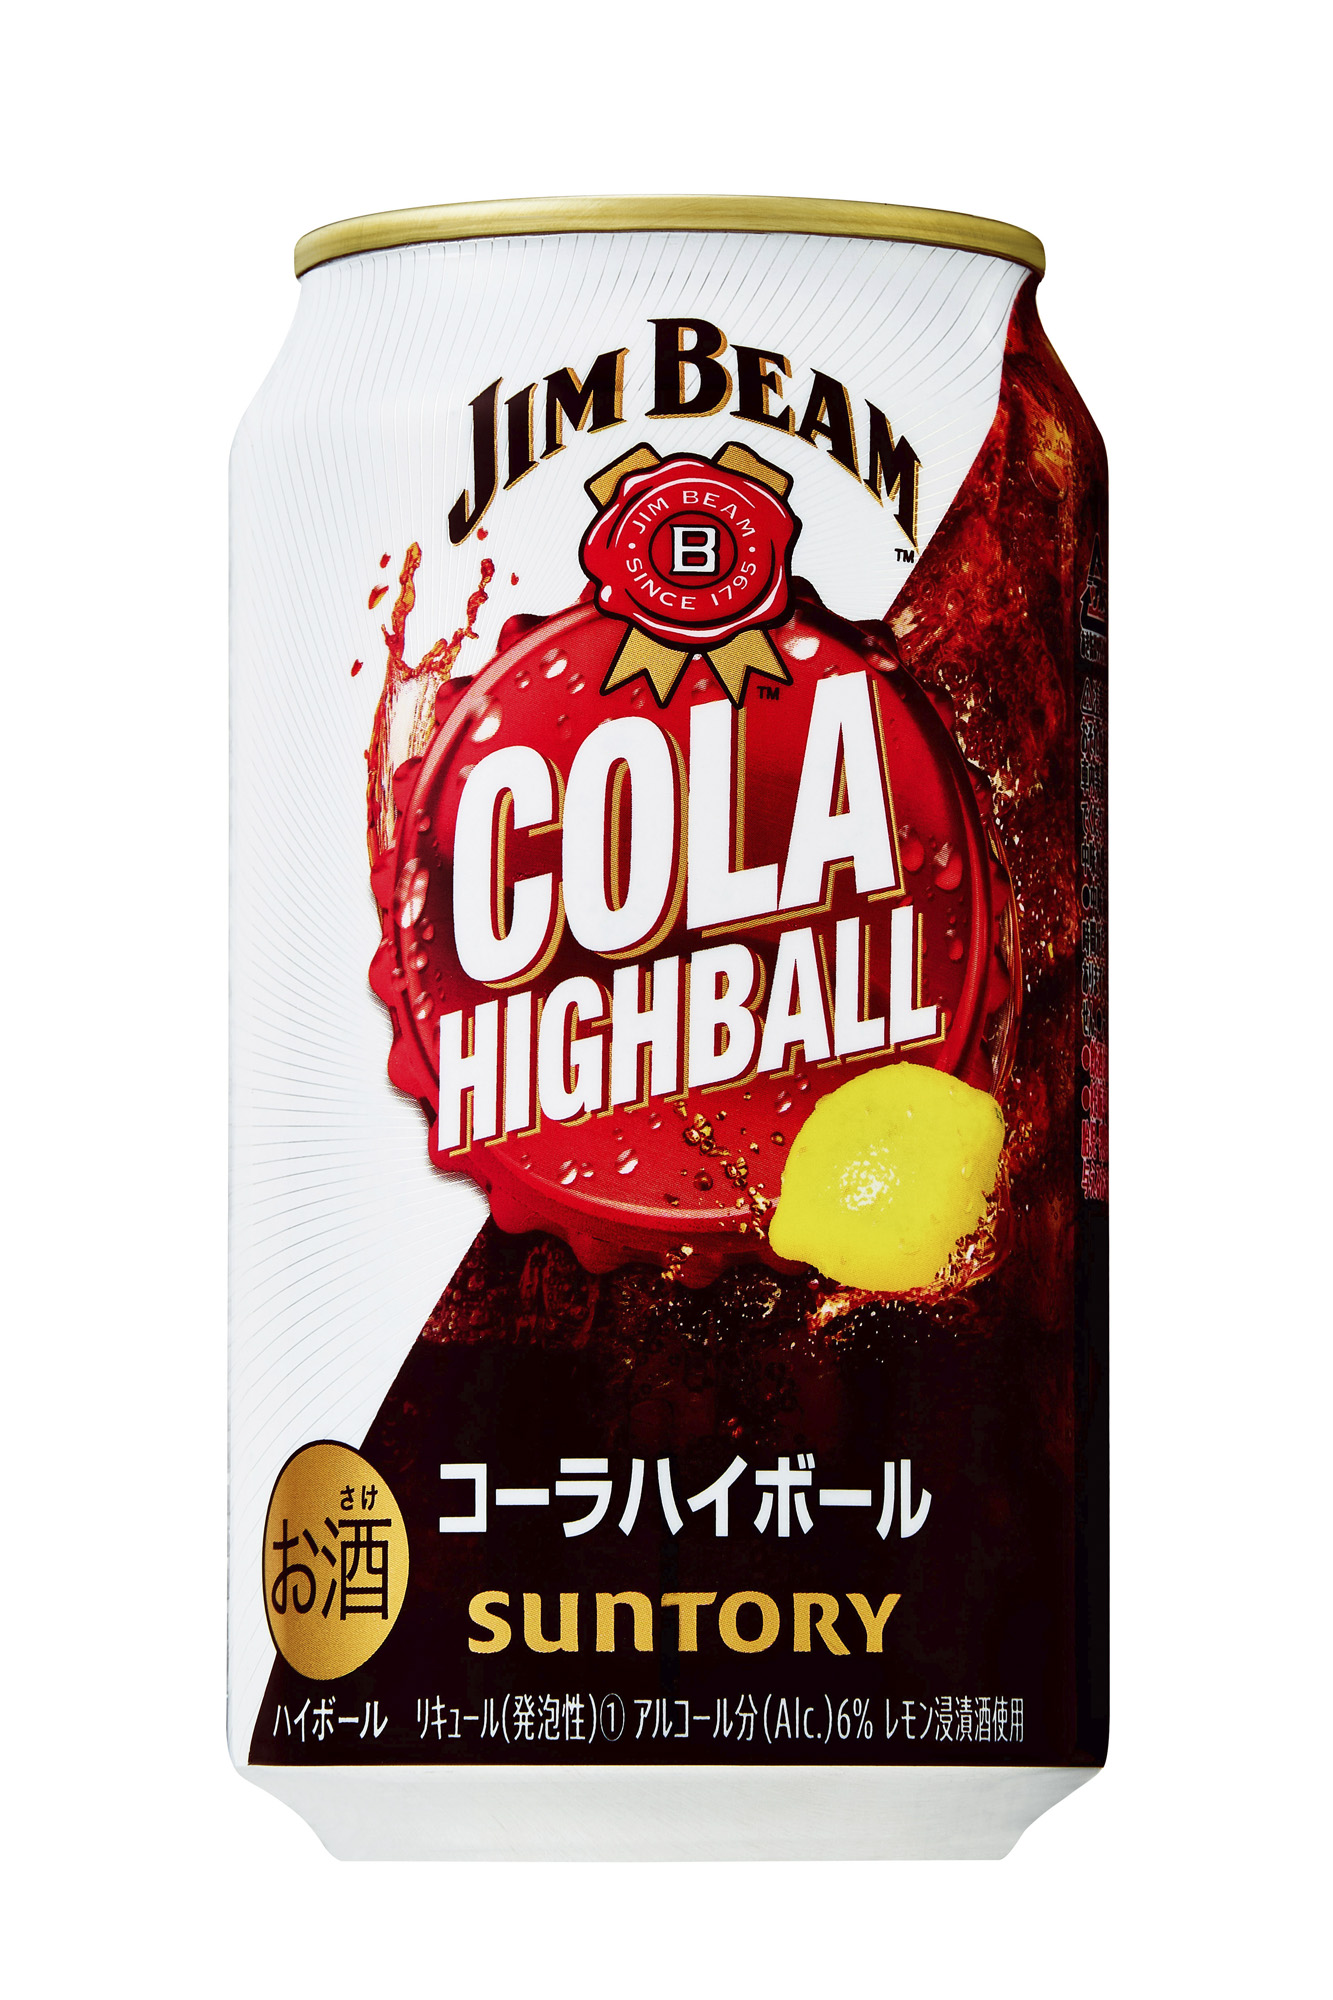 ジムビーム ハイボール缶 コーラハイボール 期間限定新発売 21年7月日 ニュースリリース サントリー